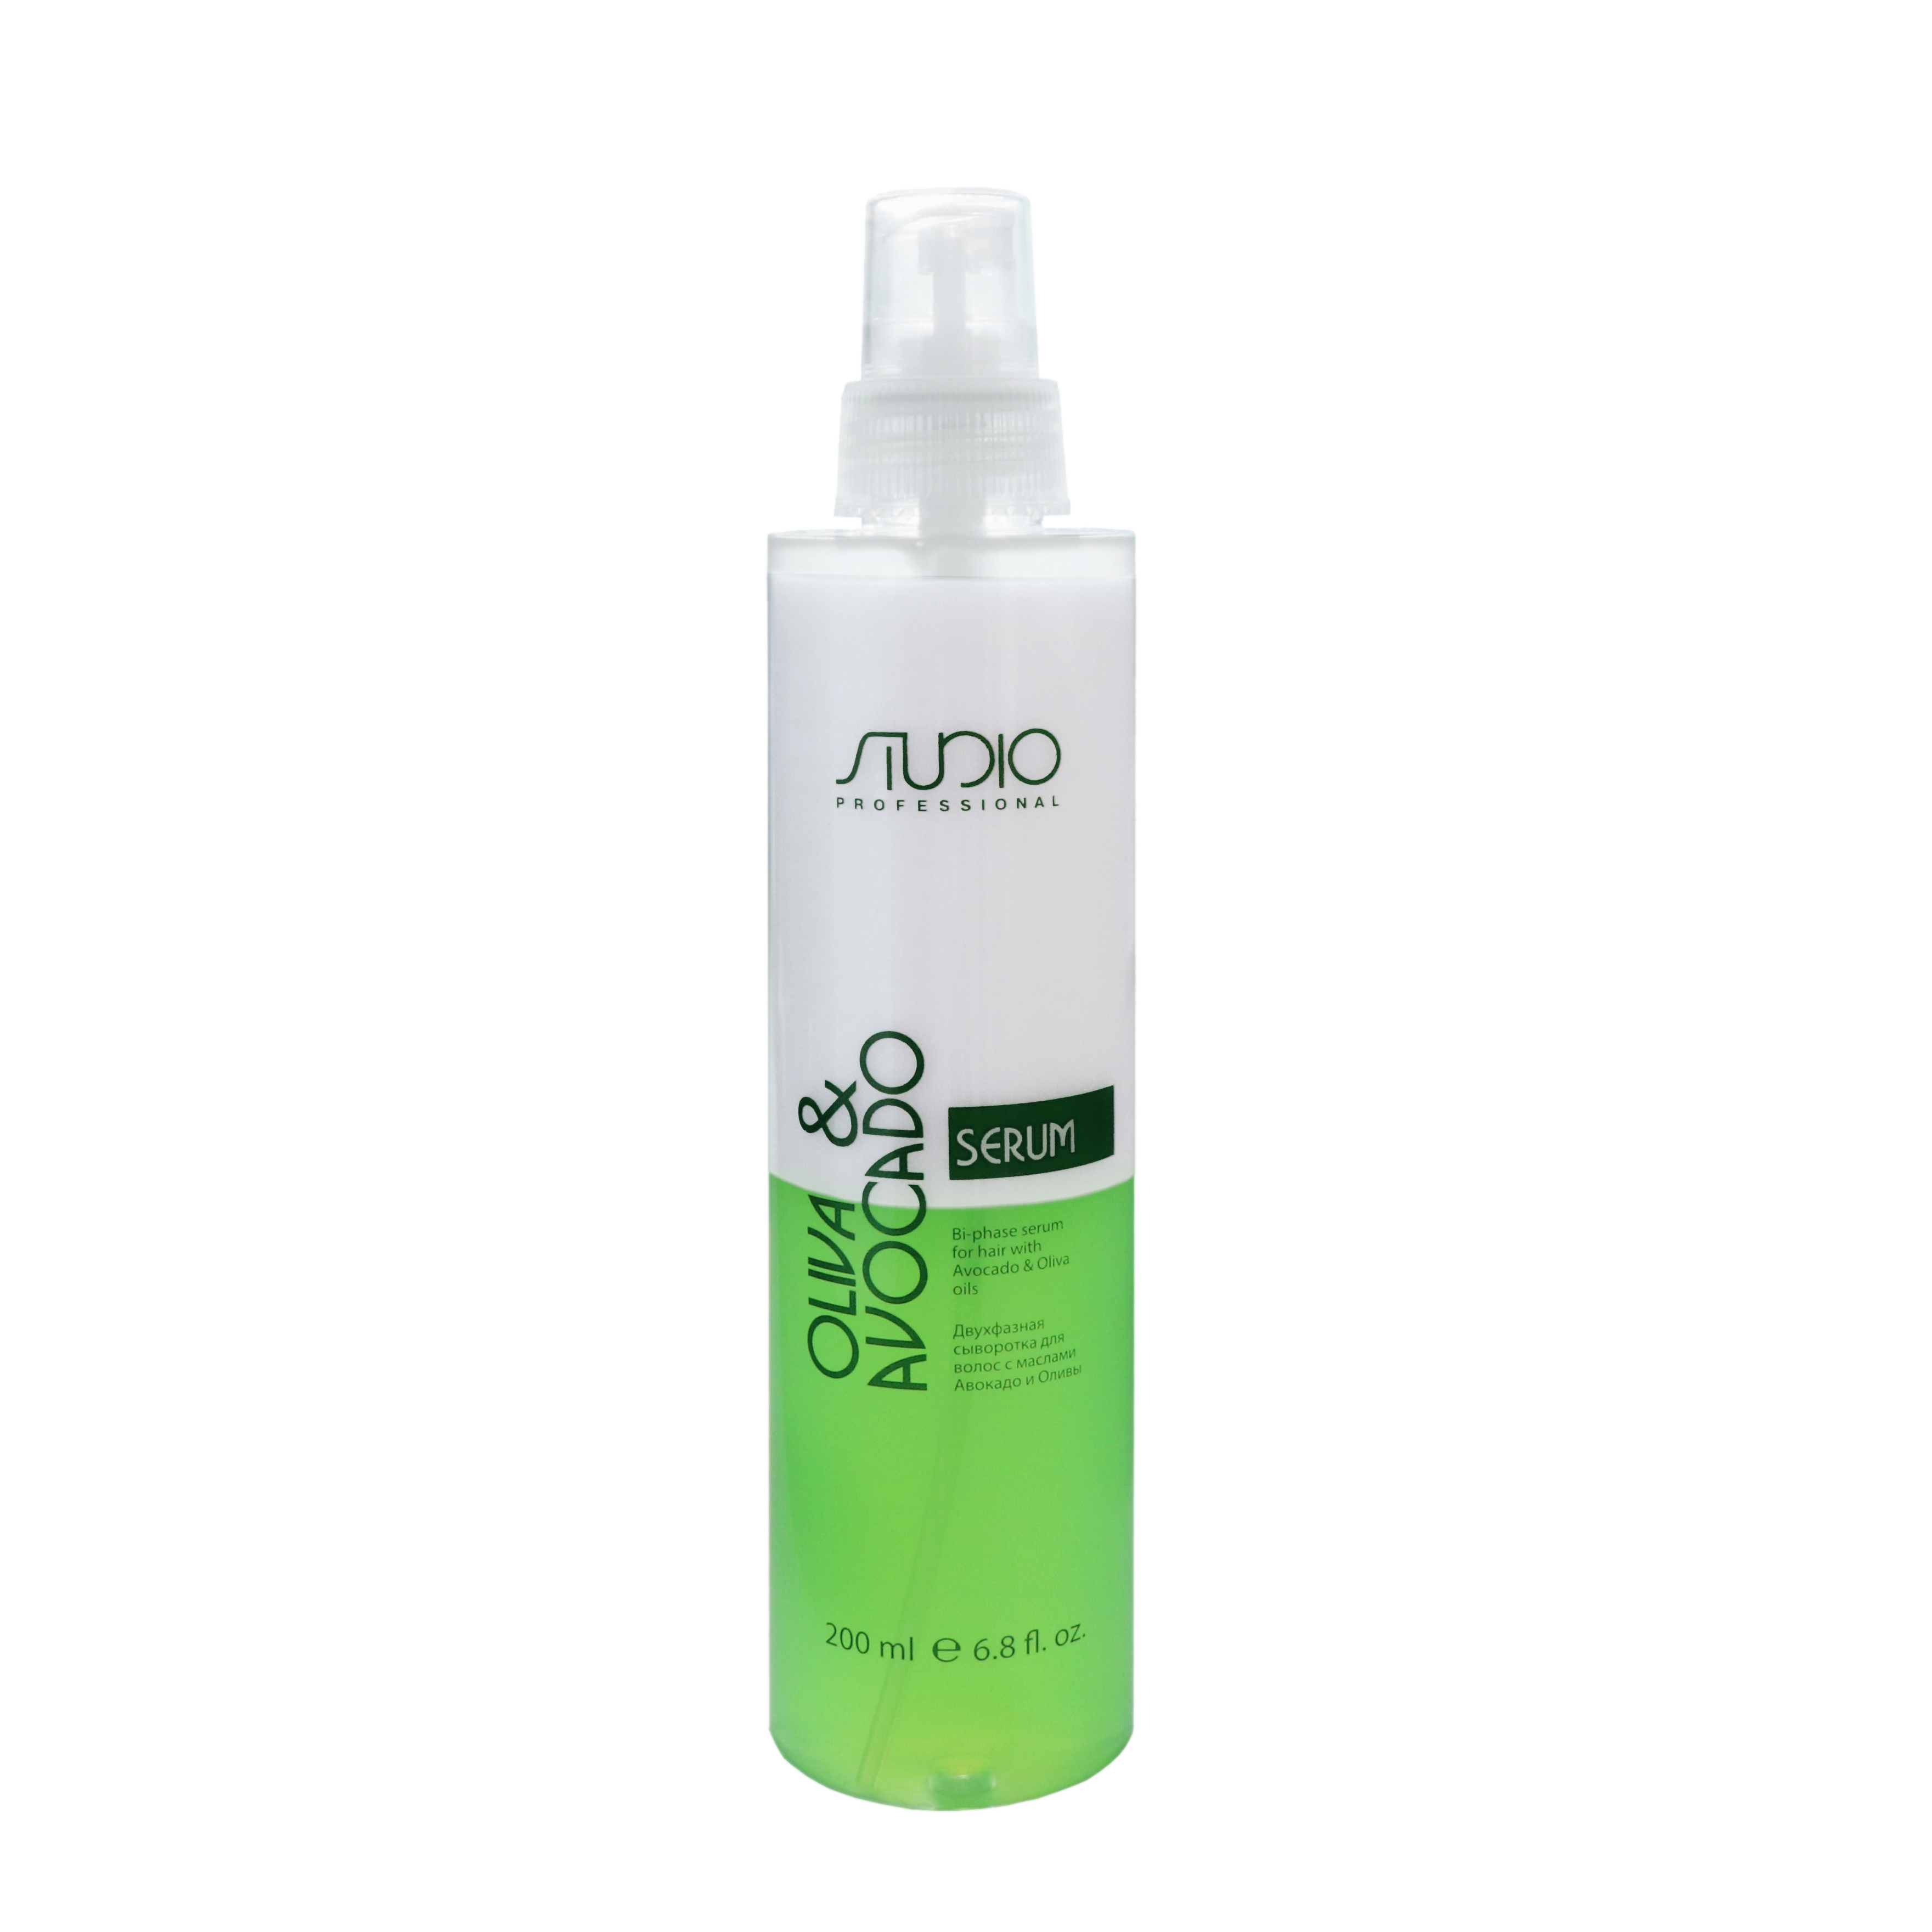 картинка Kapous Studio Professional 200 мл, Двухфазная сыворотка для волос с маслами Авокадо и Оливы от магазина El Corazon